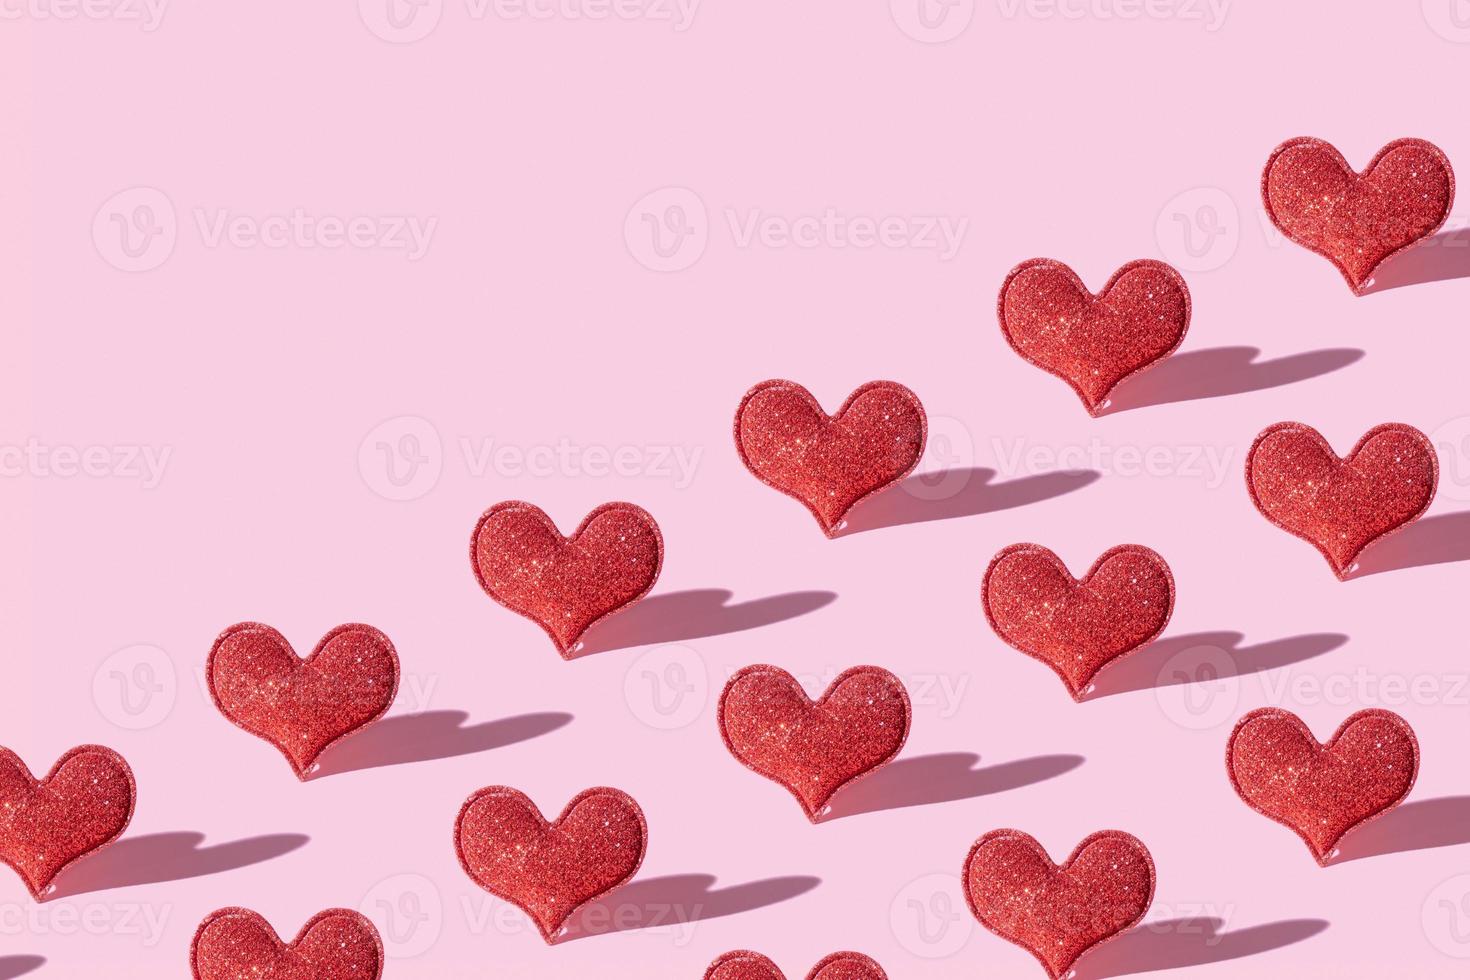 sem emenda com forma de coração glitter vermelho sobre fundo rosa com sombra forte. dia dos namorados símbolo minimalista amor foto